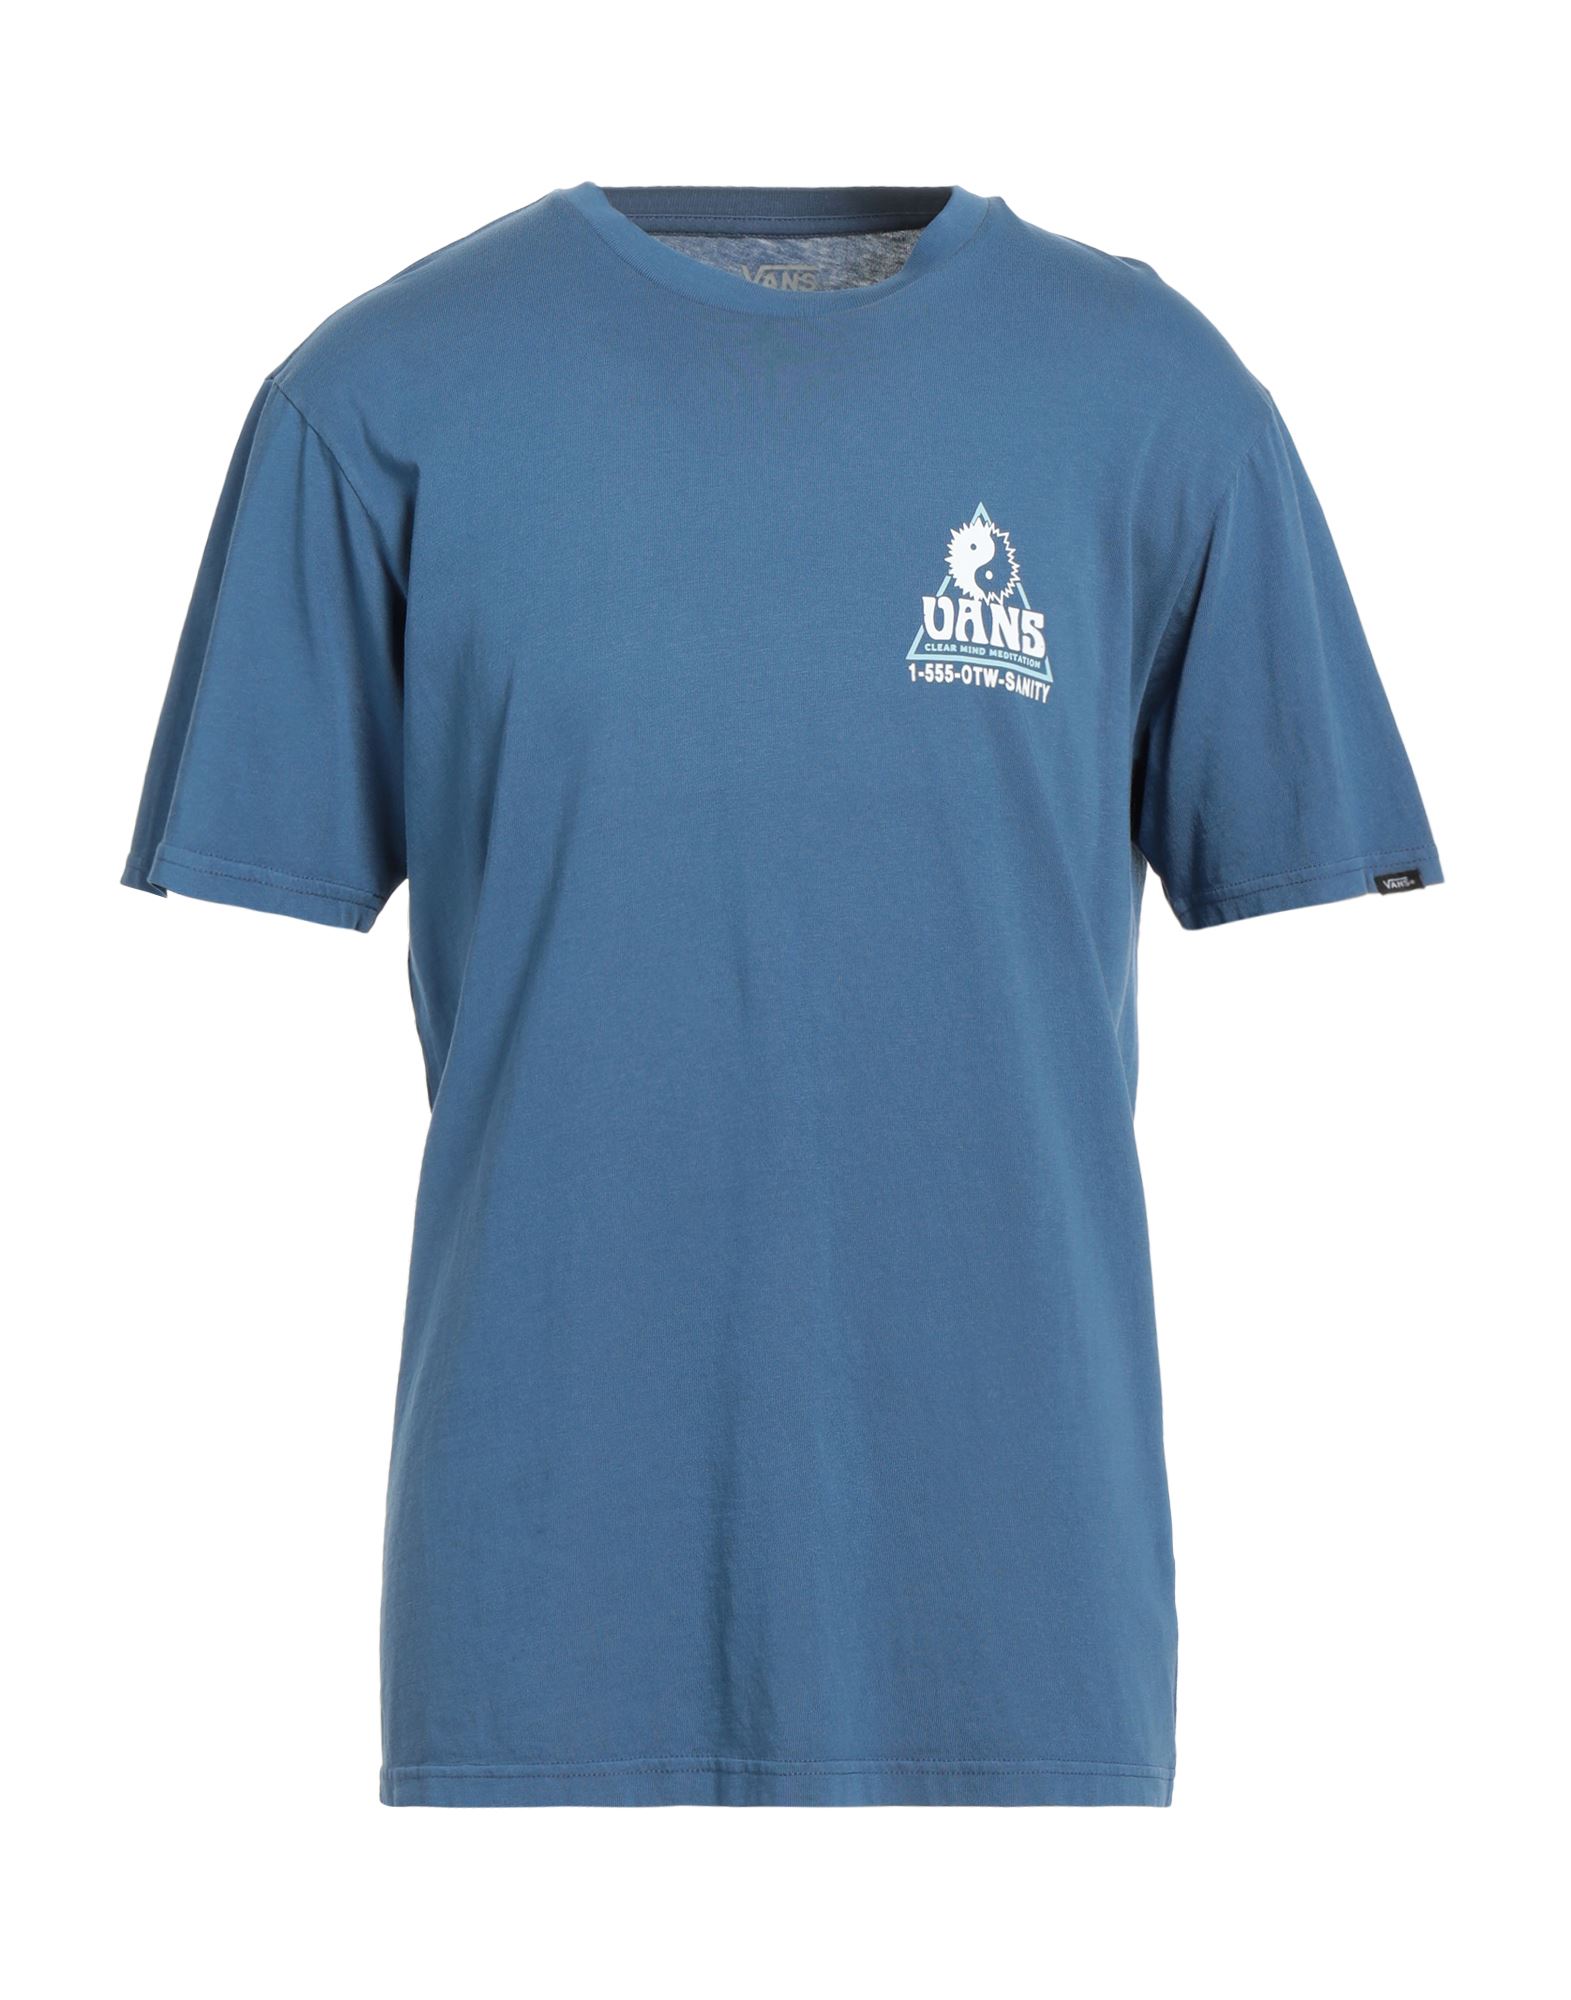 VANS T-shirts Herren Blaugrau von VANS